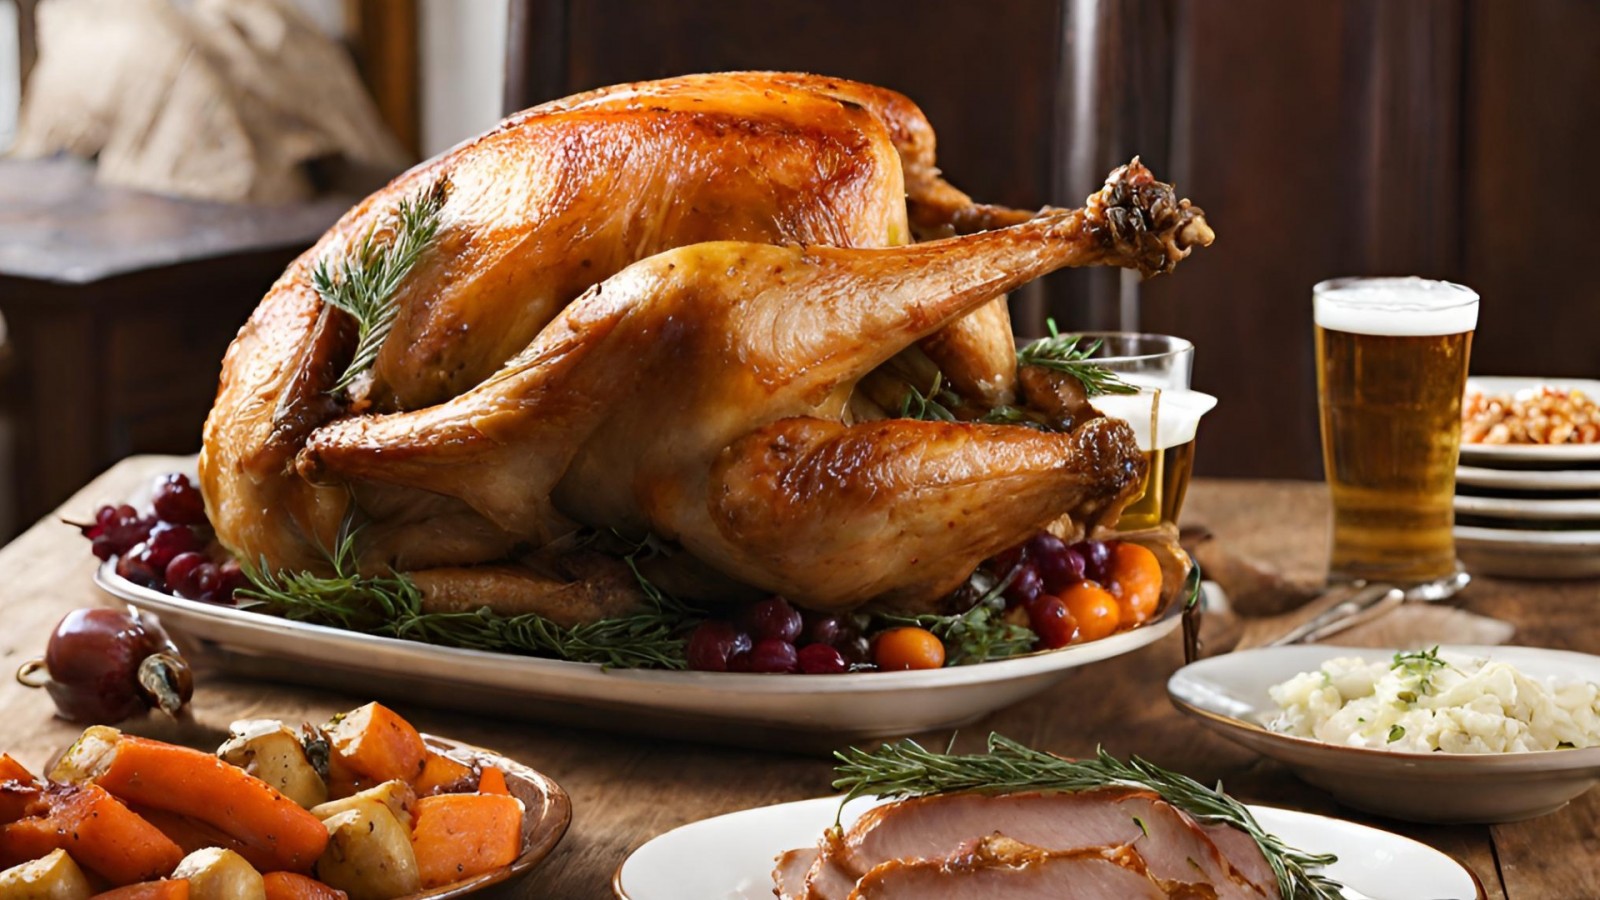 5 great beer pairings for roast turkey